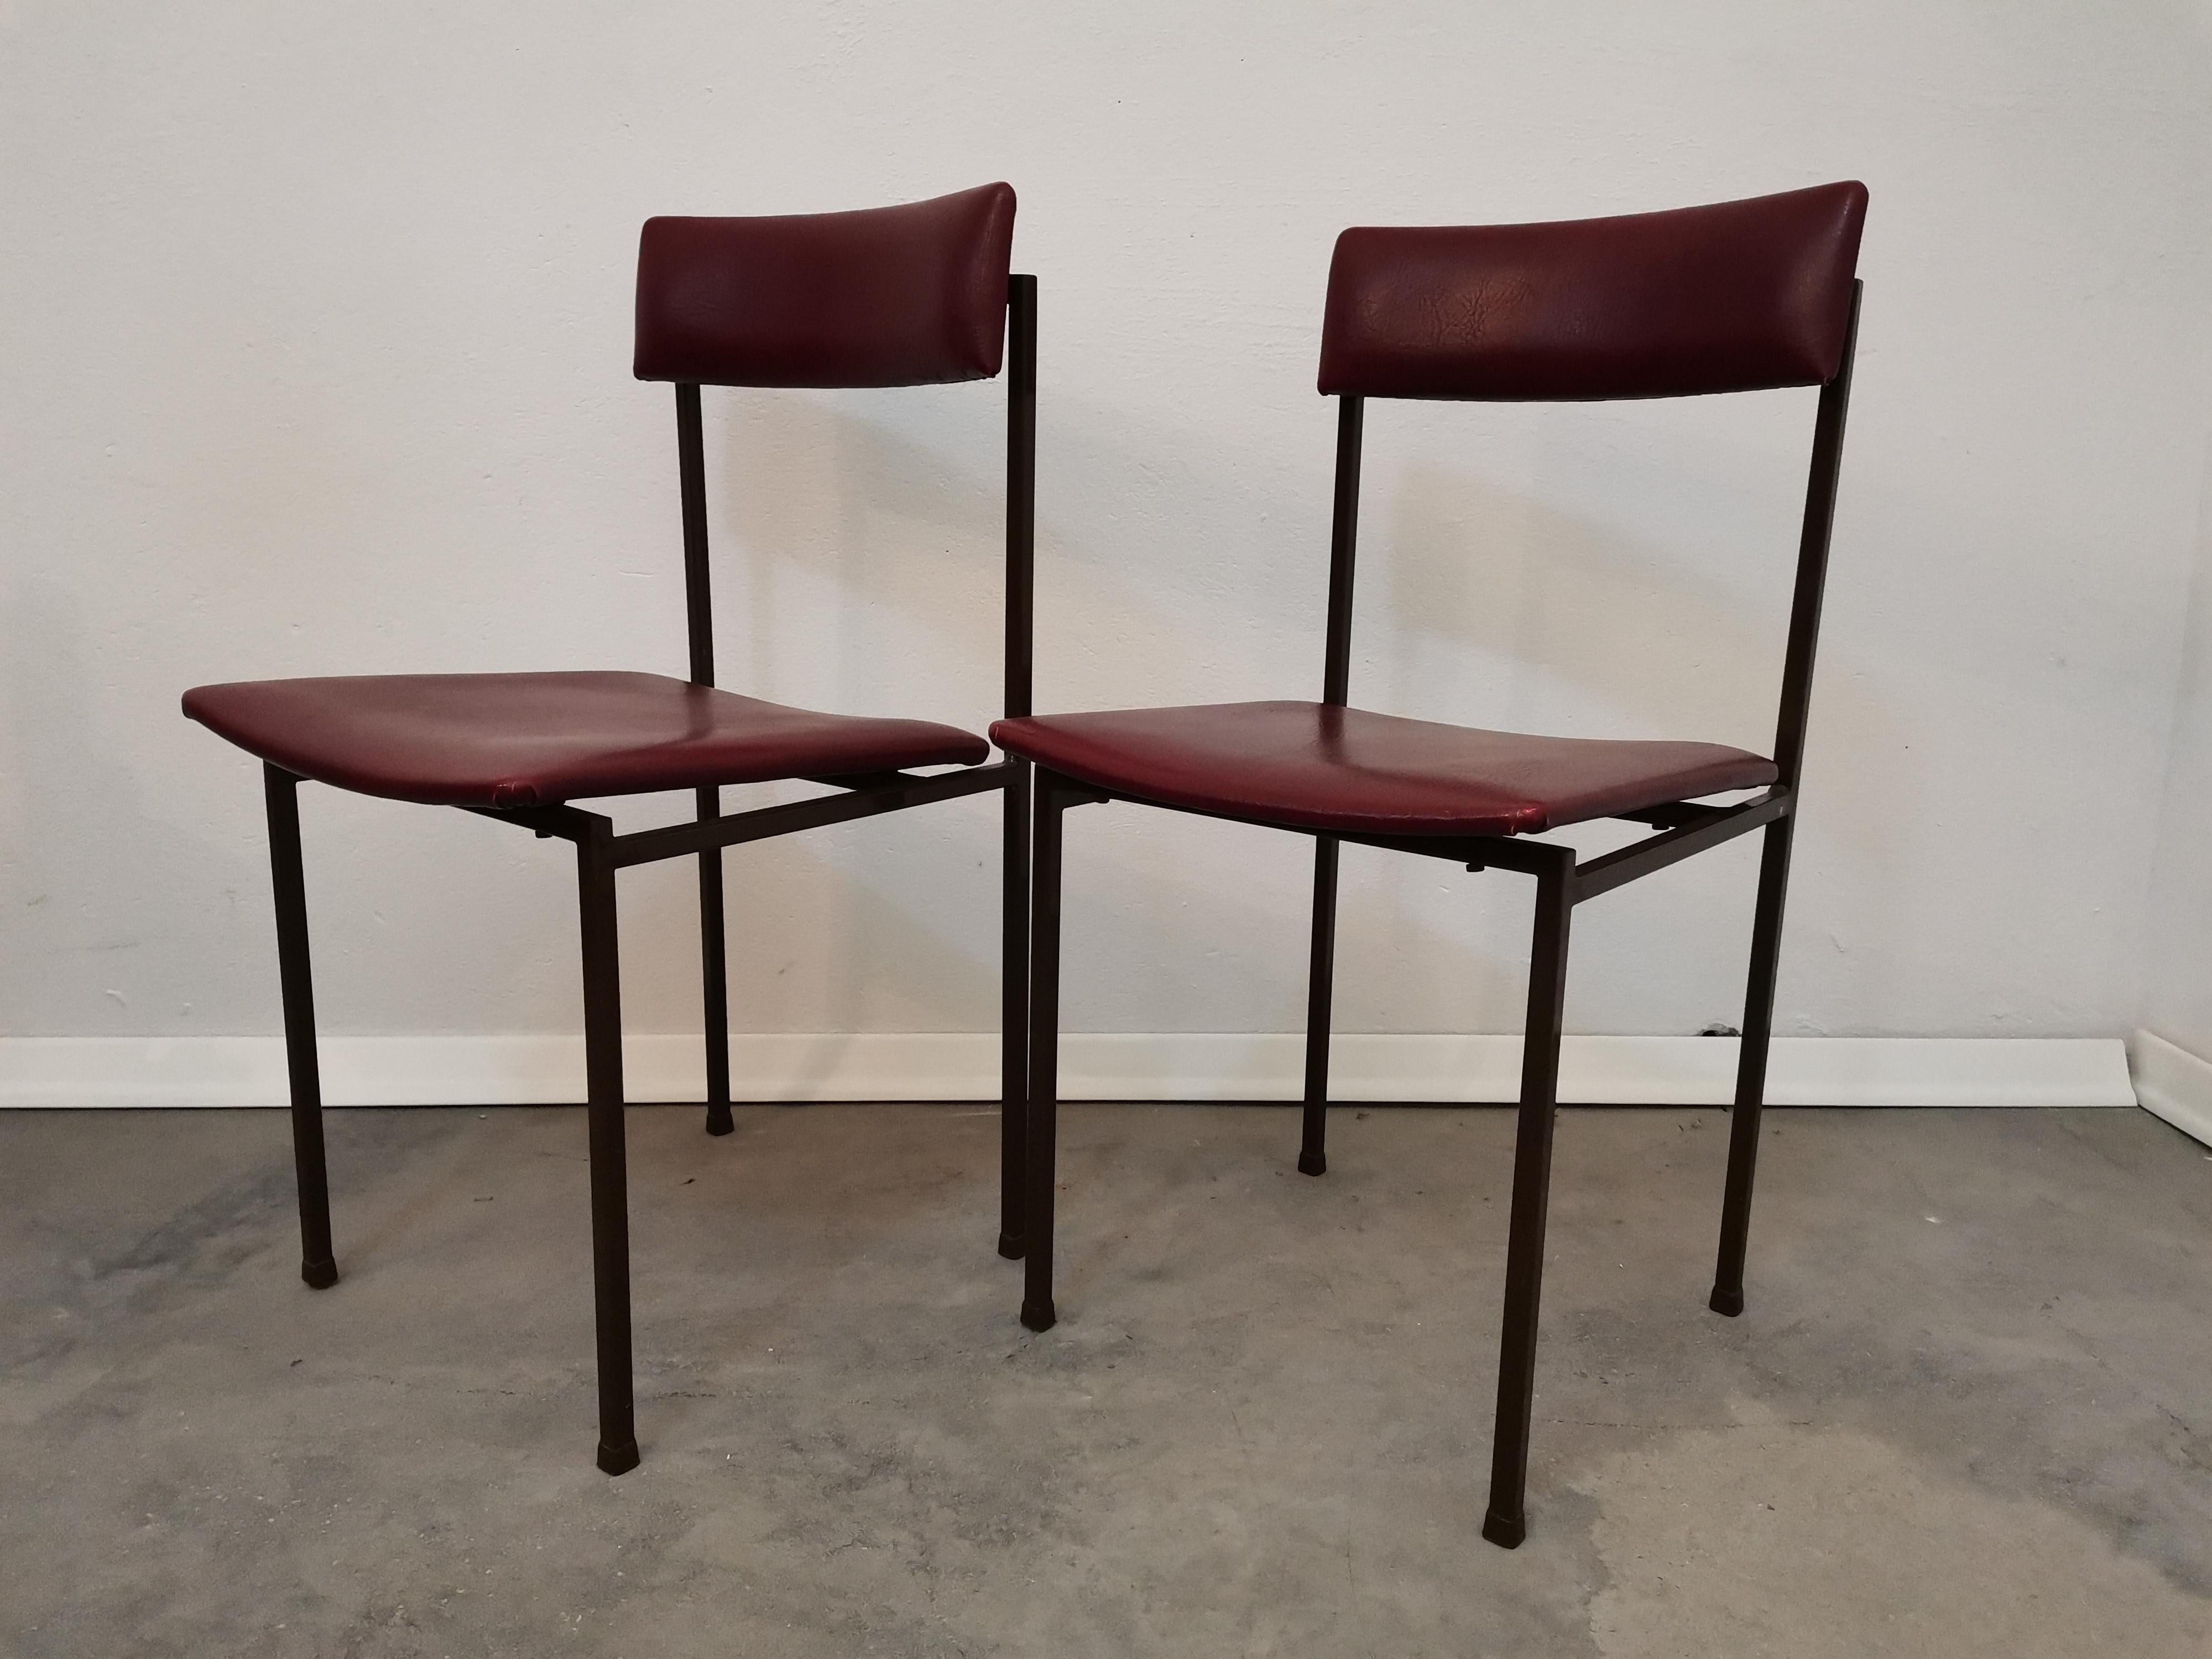 Material: Sperrholz, Kunstleder, Metall

Dieser schöne Stuhl ist ein perfektes Beispiel für minimalistisches Design aus der Mitte des Jahrhunderts. Der solide Metallrahmen und das mit dunkelrotem Kunstleder bezogene Sperrholz bringen eine elegante